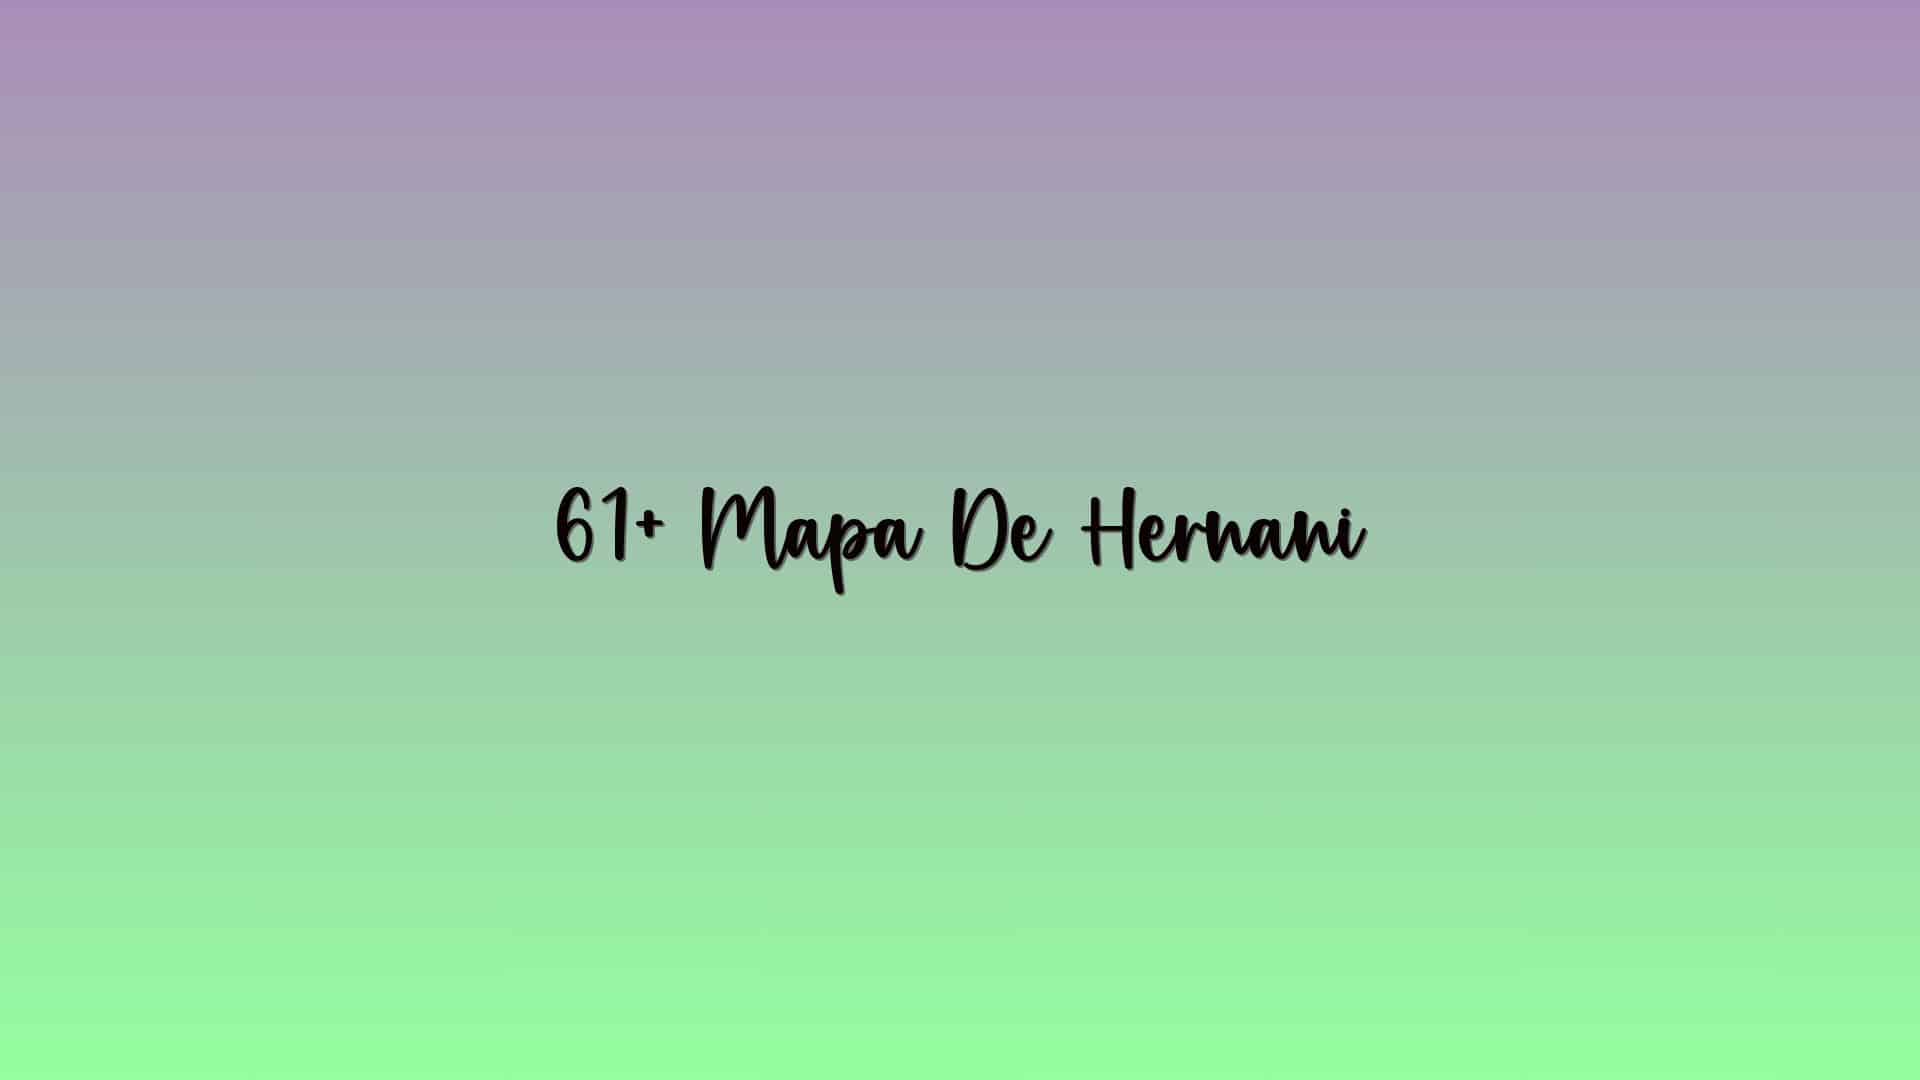 61+ Mapa De Hernani